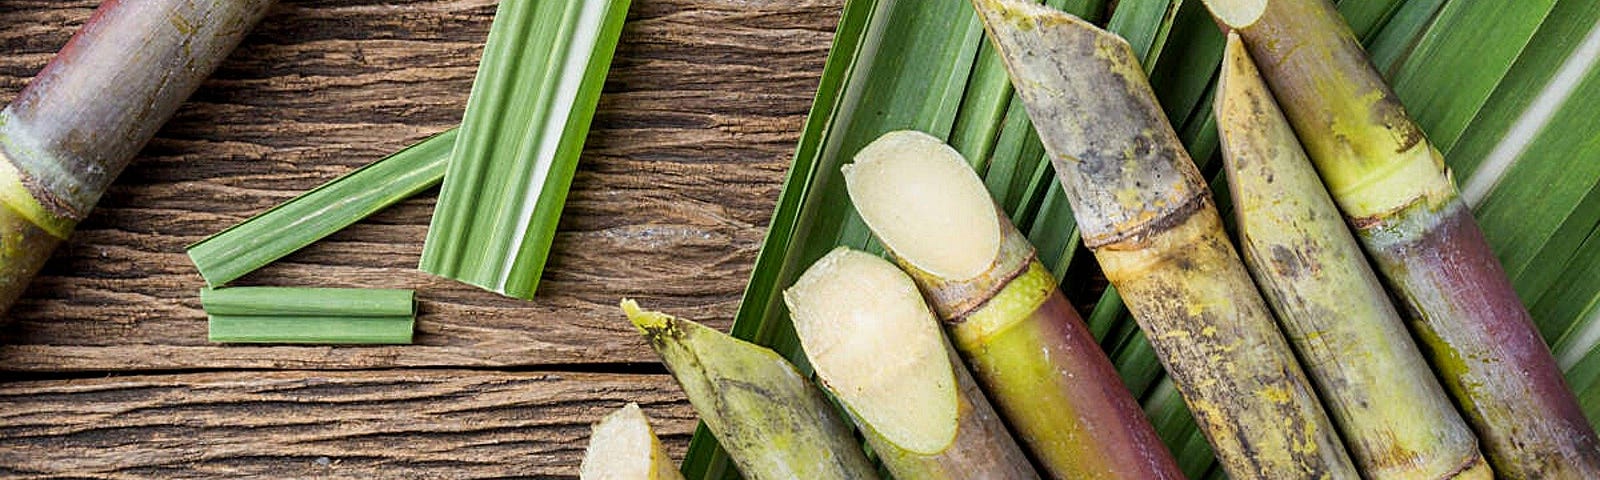 Сахарный тростник районы выращивания. Сахарный тростник в Латинской Америке. Монако сахарный тростник. Сахарный тростник в Доминикане. Сахарный тростник культивируемый.